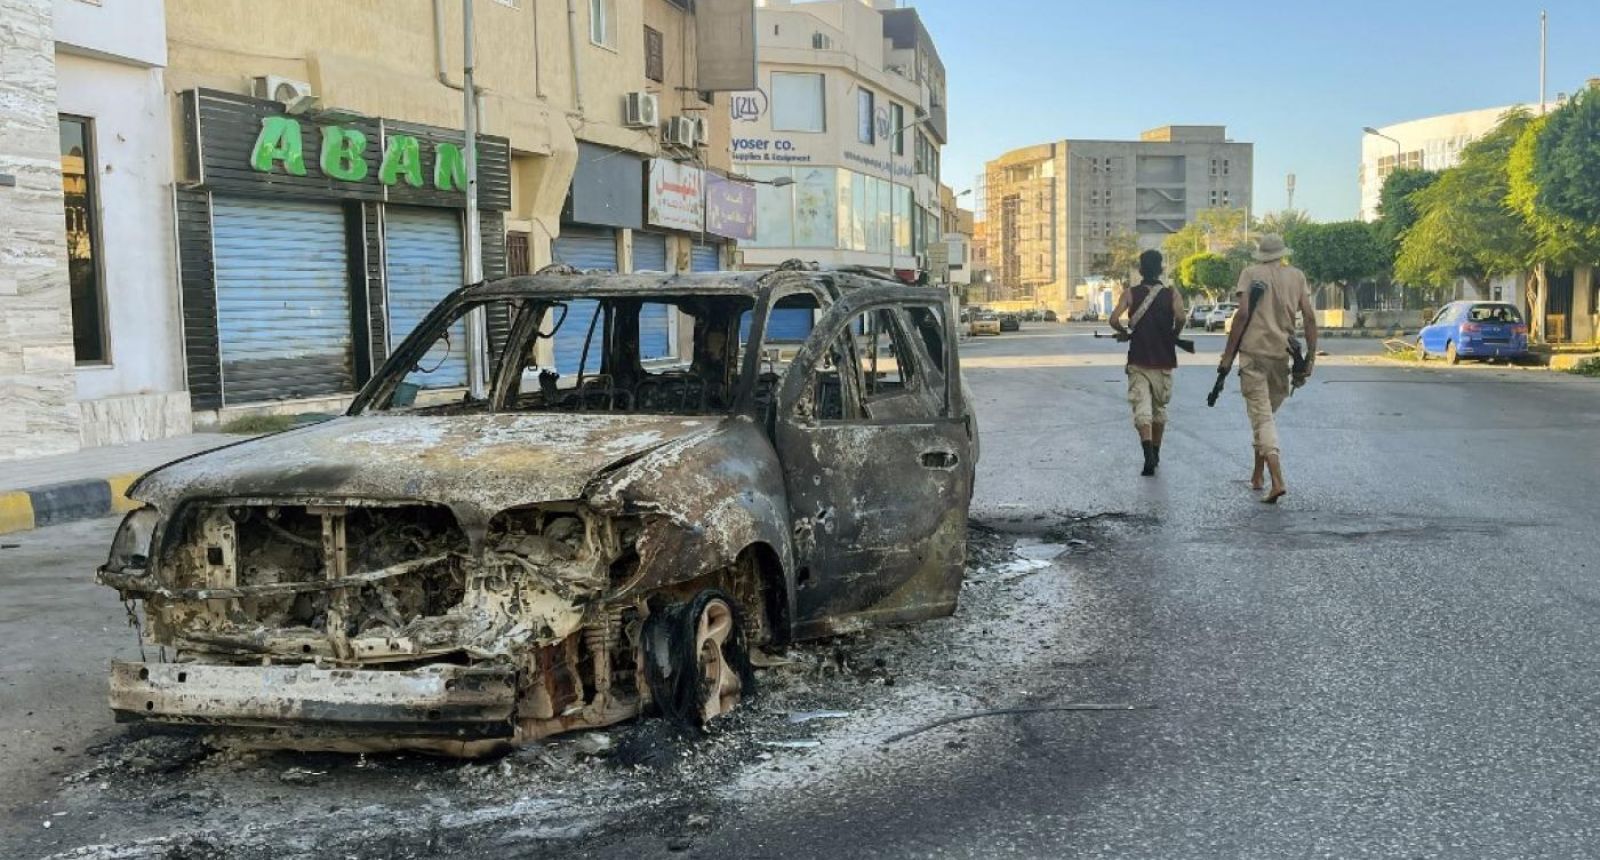 أثار اشتباكات طرابلس - مصدر الصورة AFP